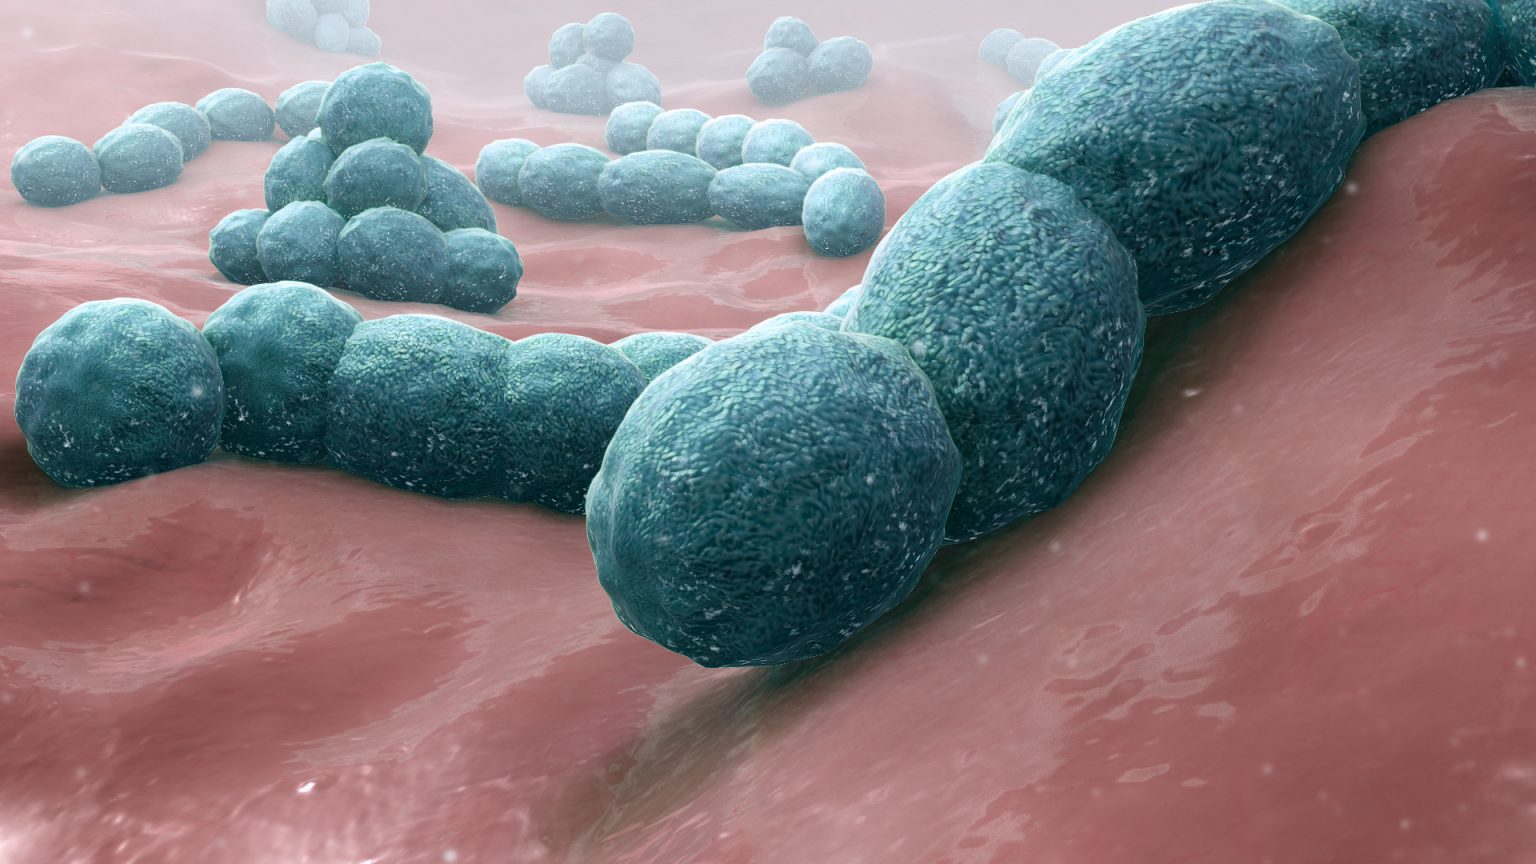 Streptococcus Pneumoniae - Causes, Prevention, Treatment